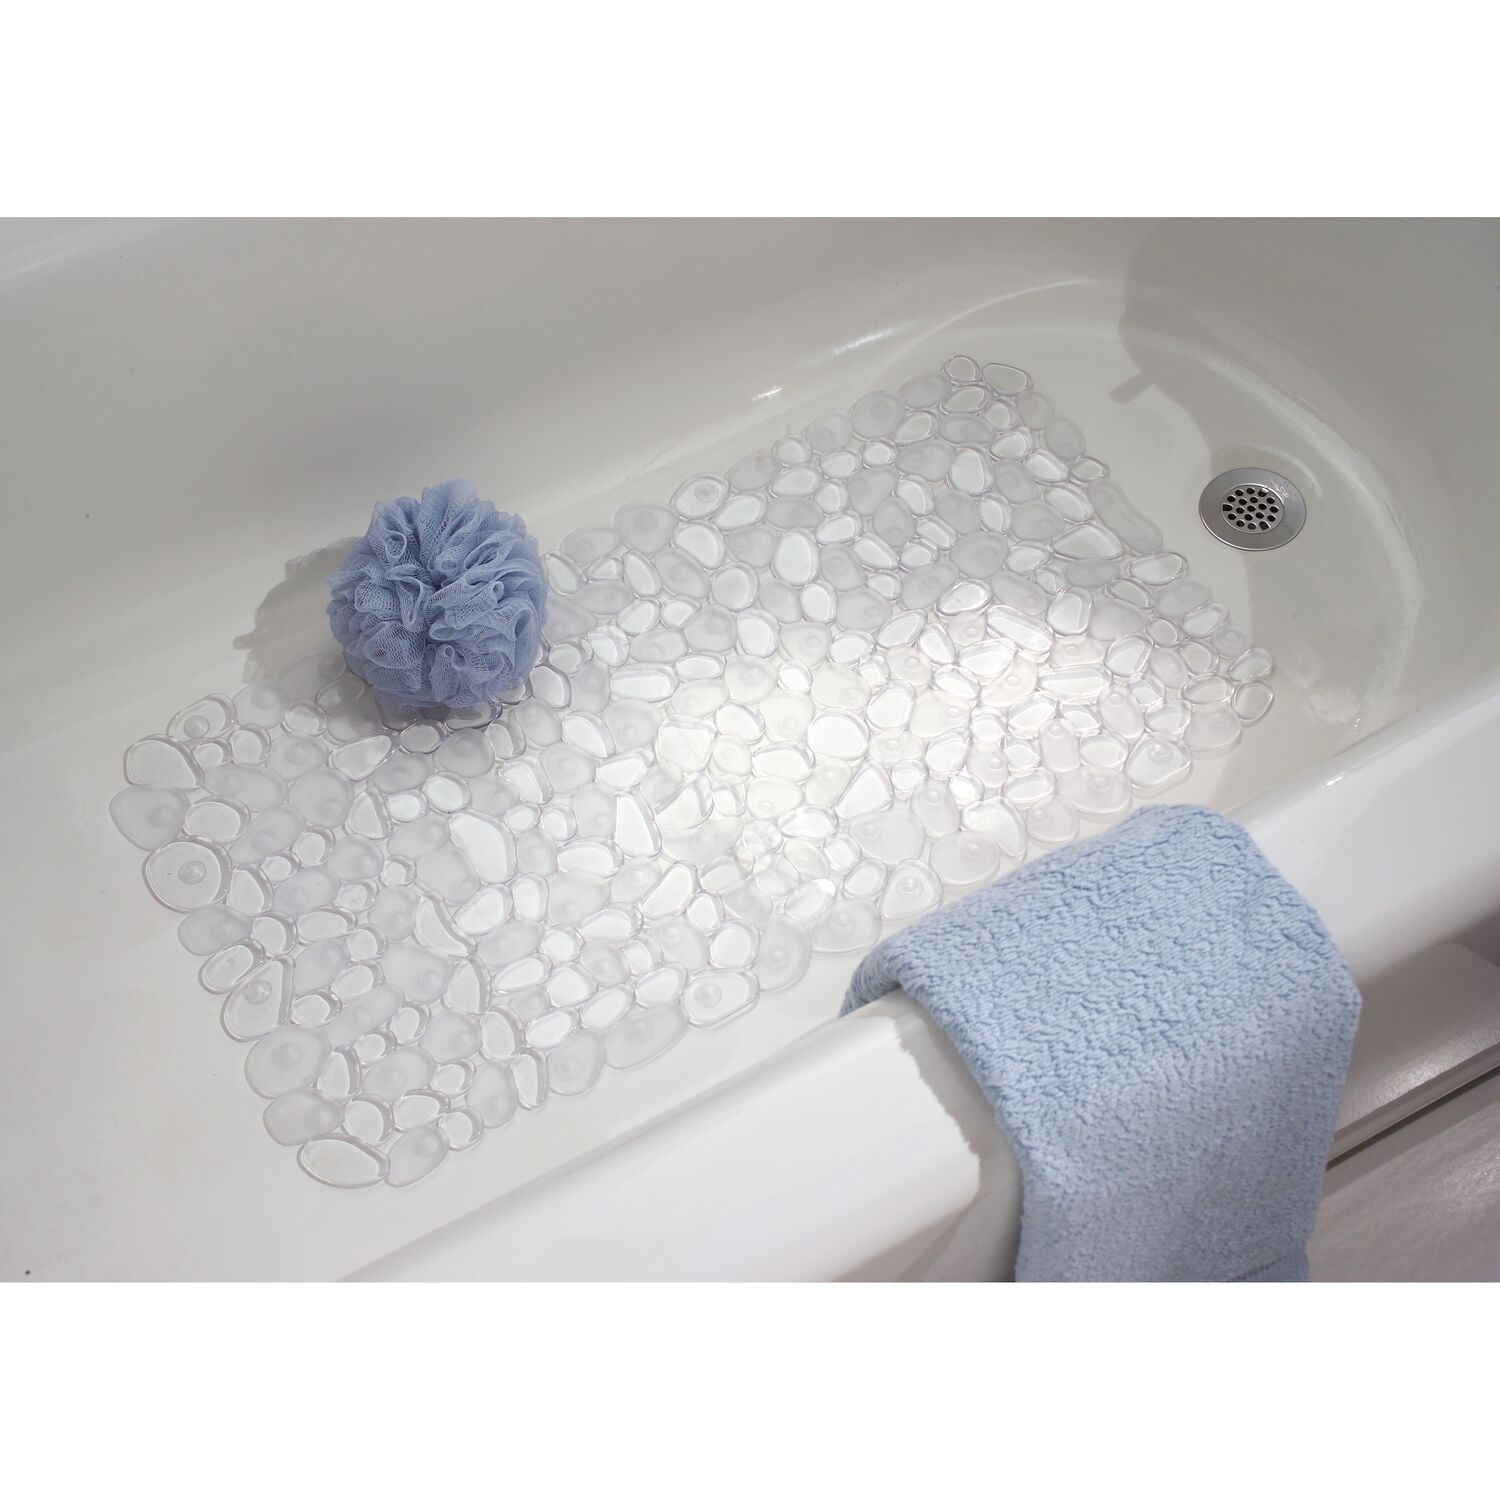 LARGE CLEAR NON SLIP PEBBLE DESIGN BATH SHOWER MAT PVC BATHROOM WET ROOM DECOR 